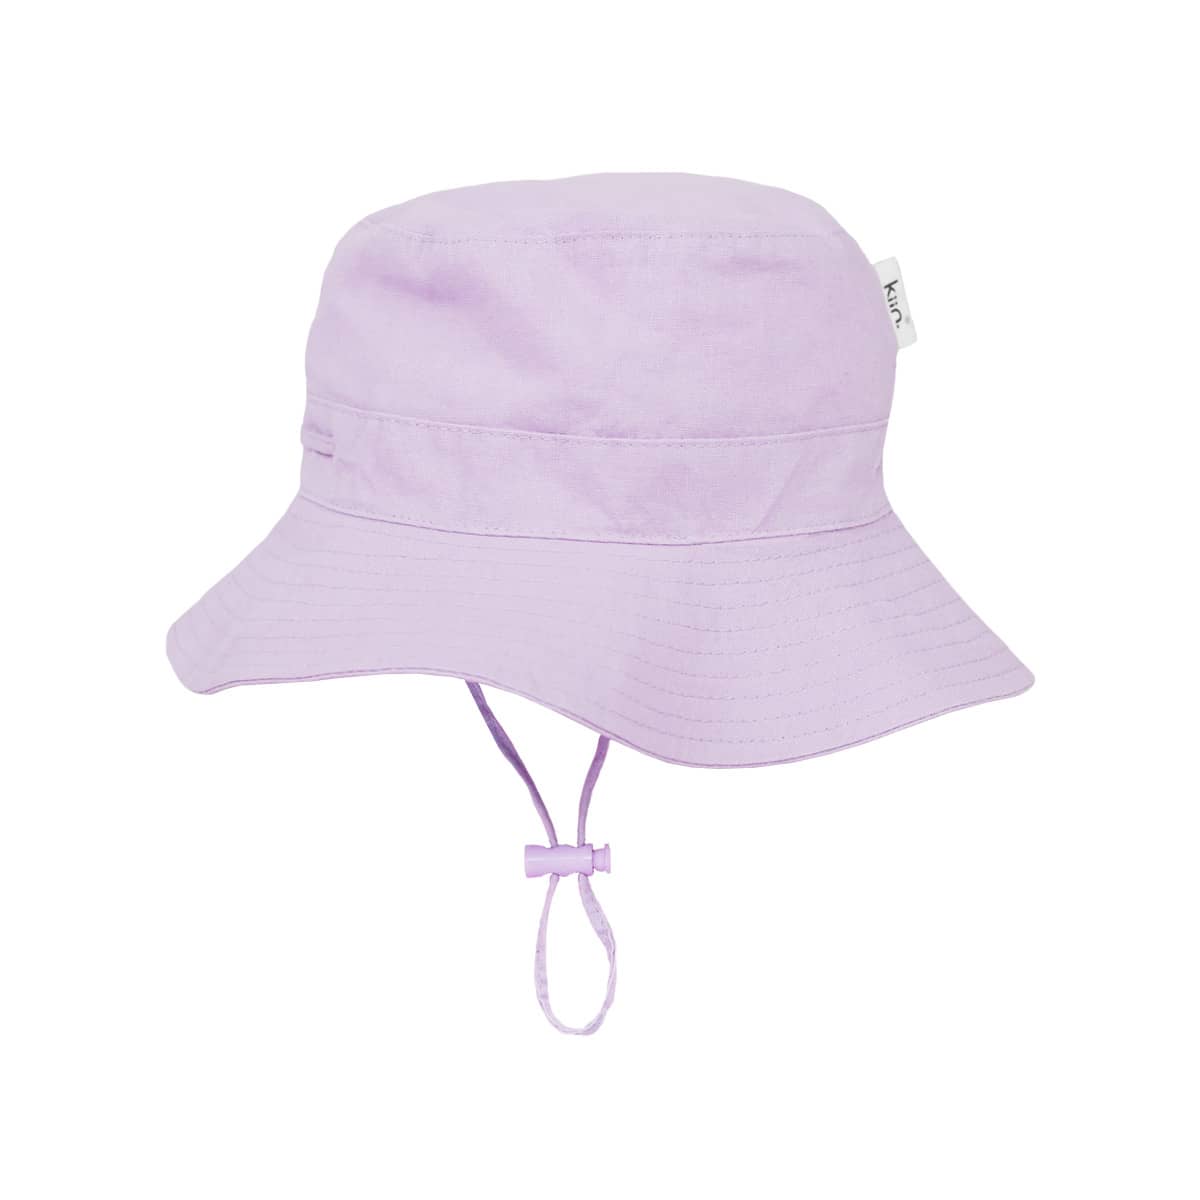 Kiin Baby Cotton Sun Hat - Lilac